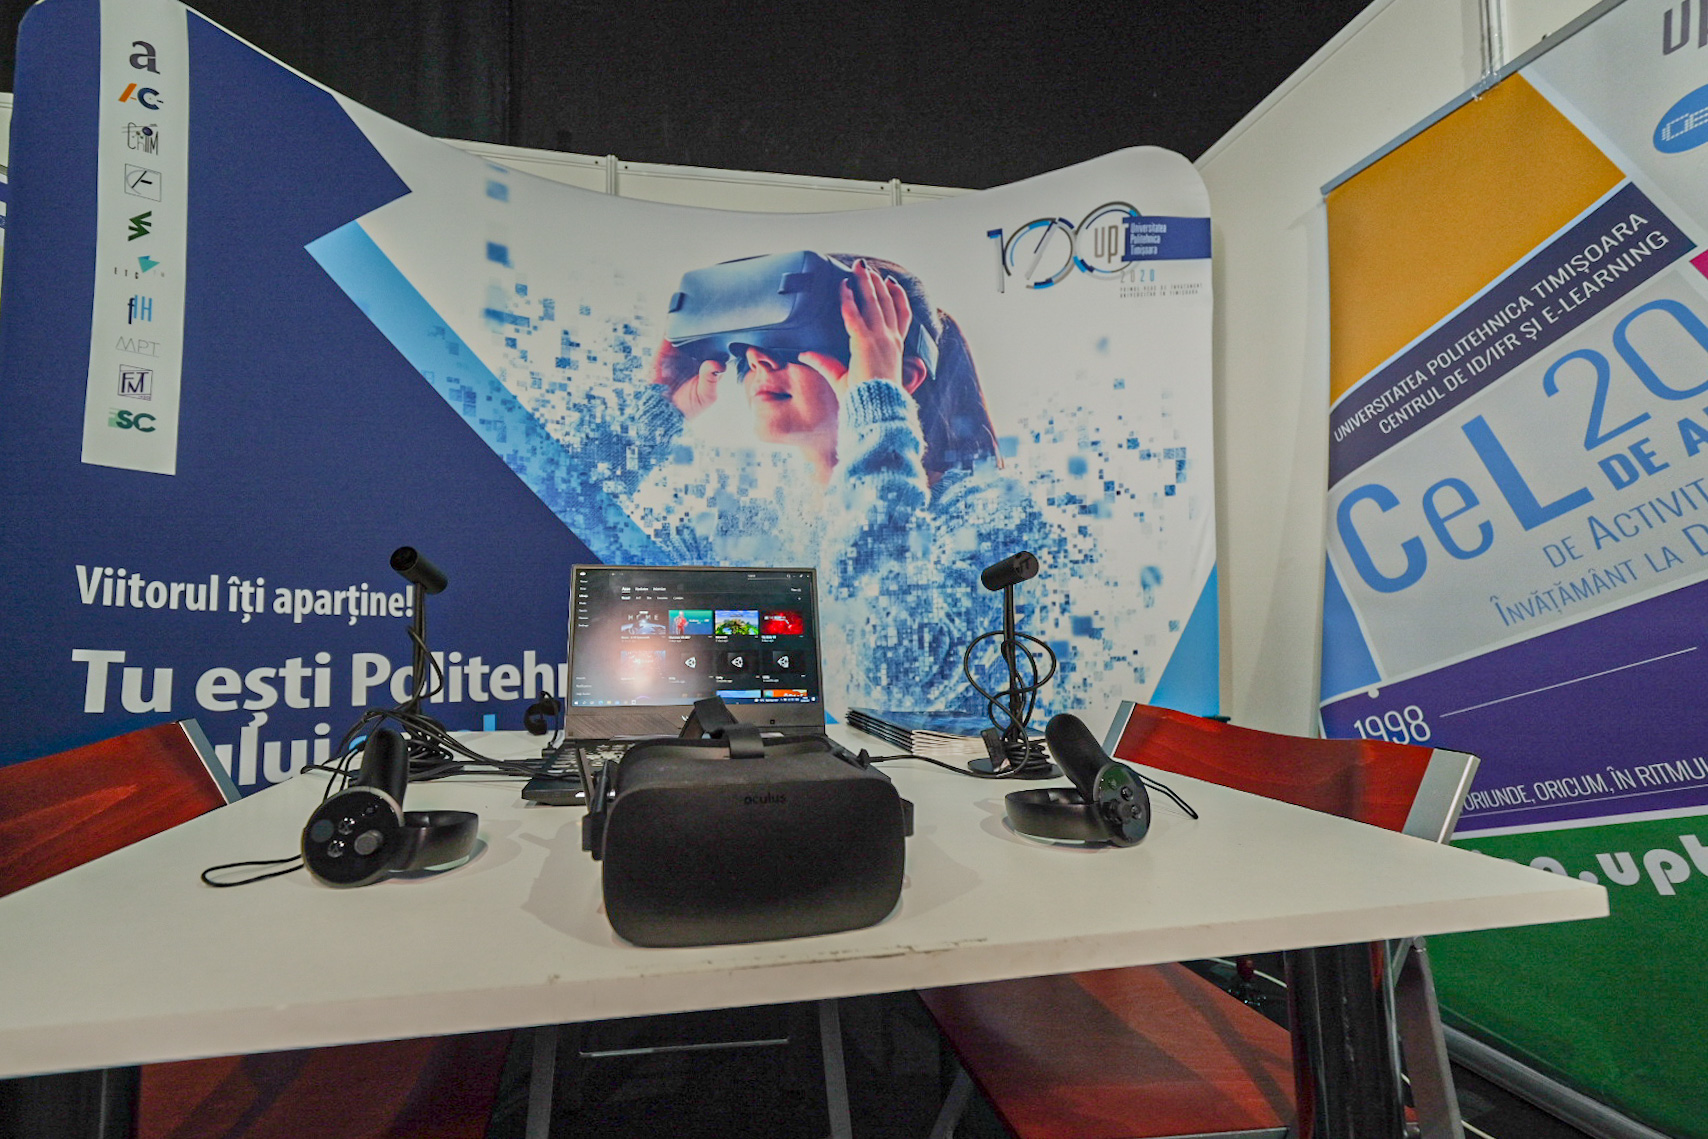 Echipa CeL la Flight Festival – Tech World: ochelari AR, VR, holograme, cuburi magice, laboratoare cu feedback senzorial și ultimele gadget-uri high-tech